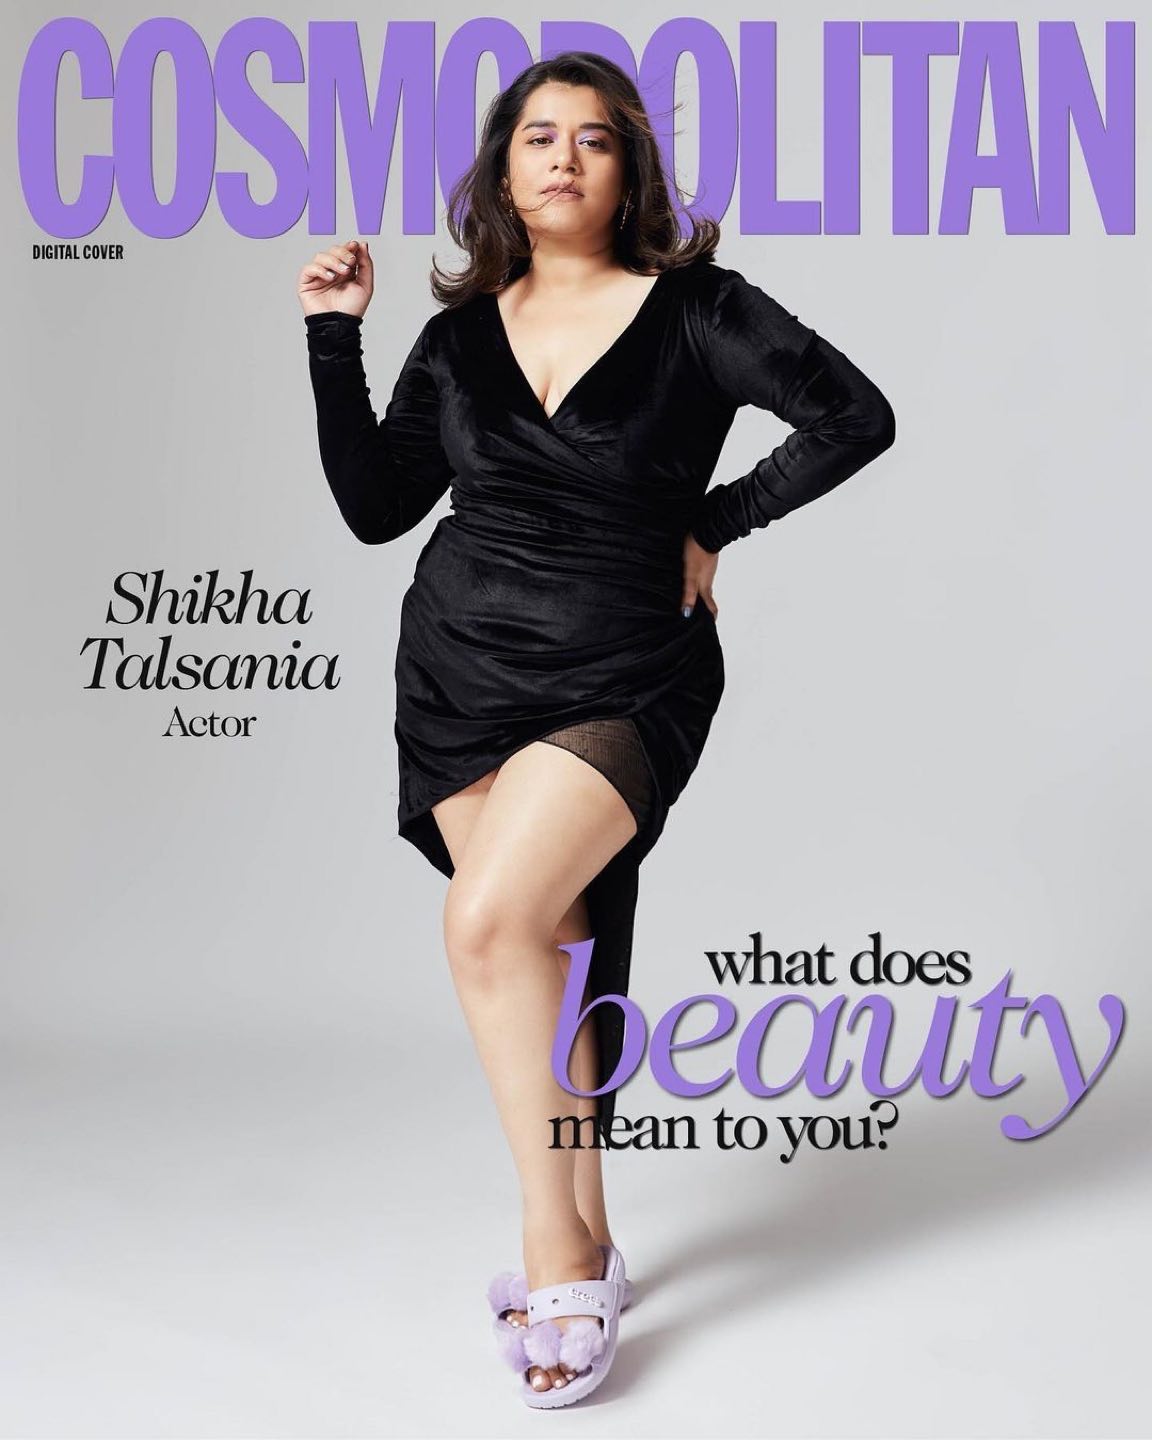 Shikha Talsania curvy body tight dress actress